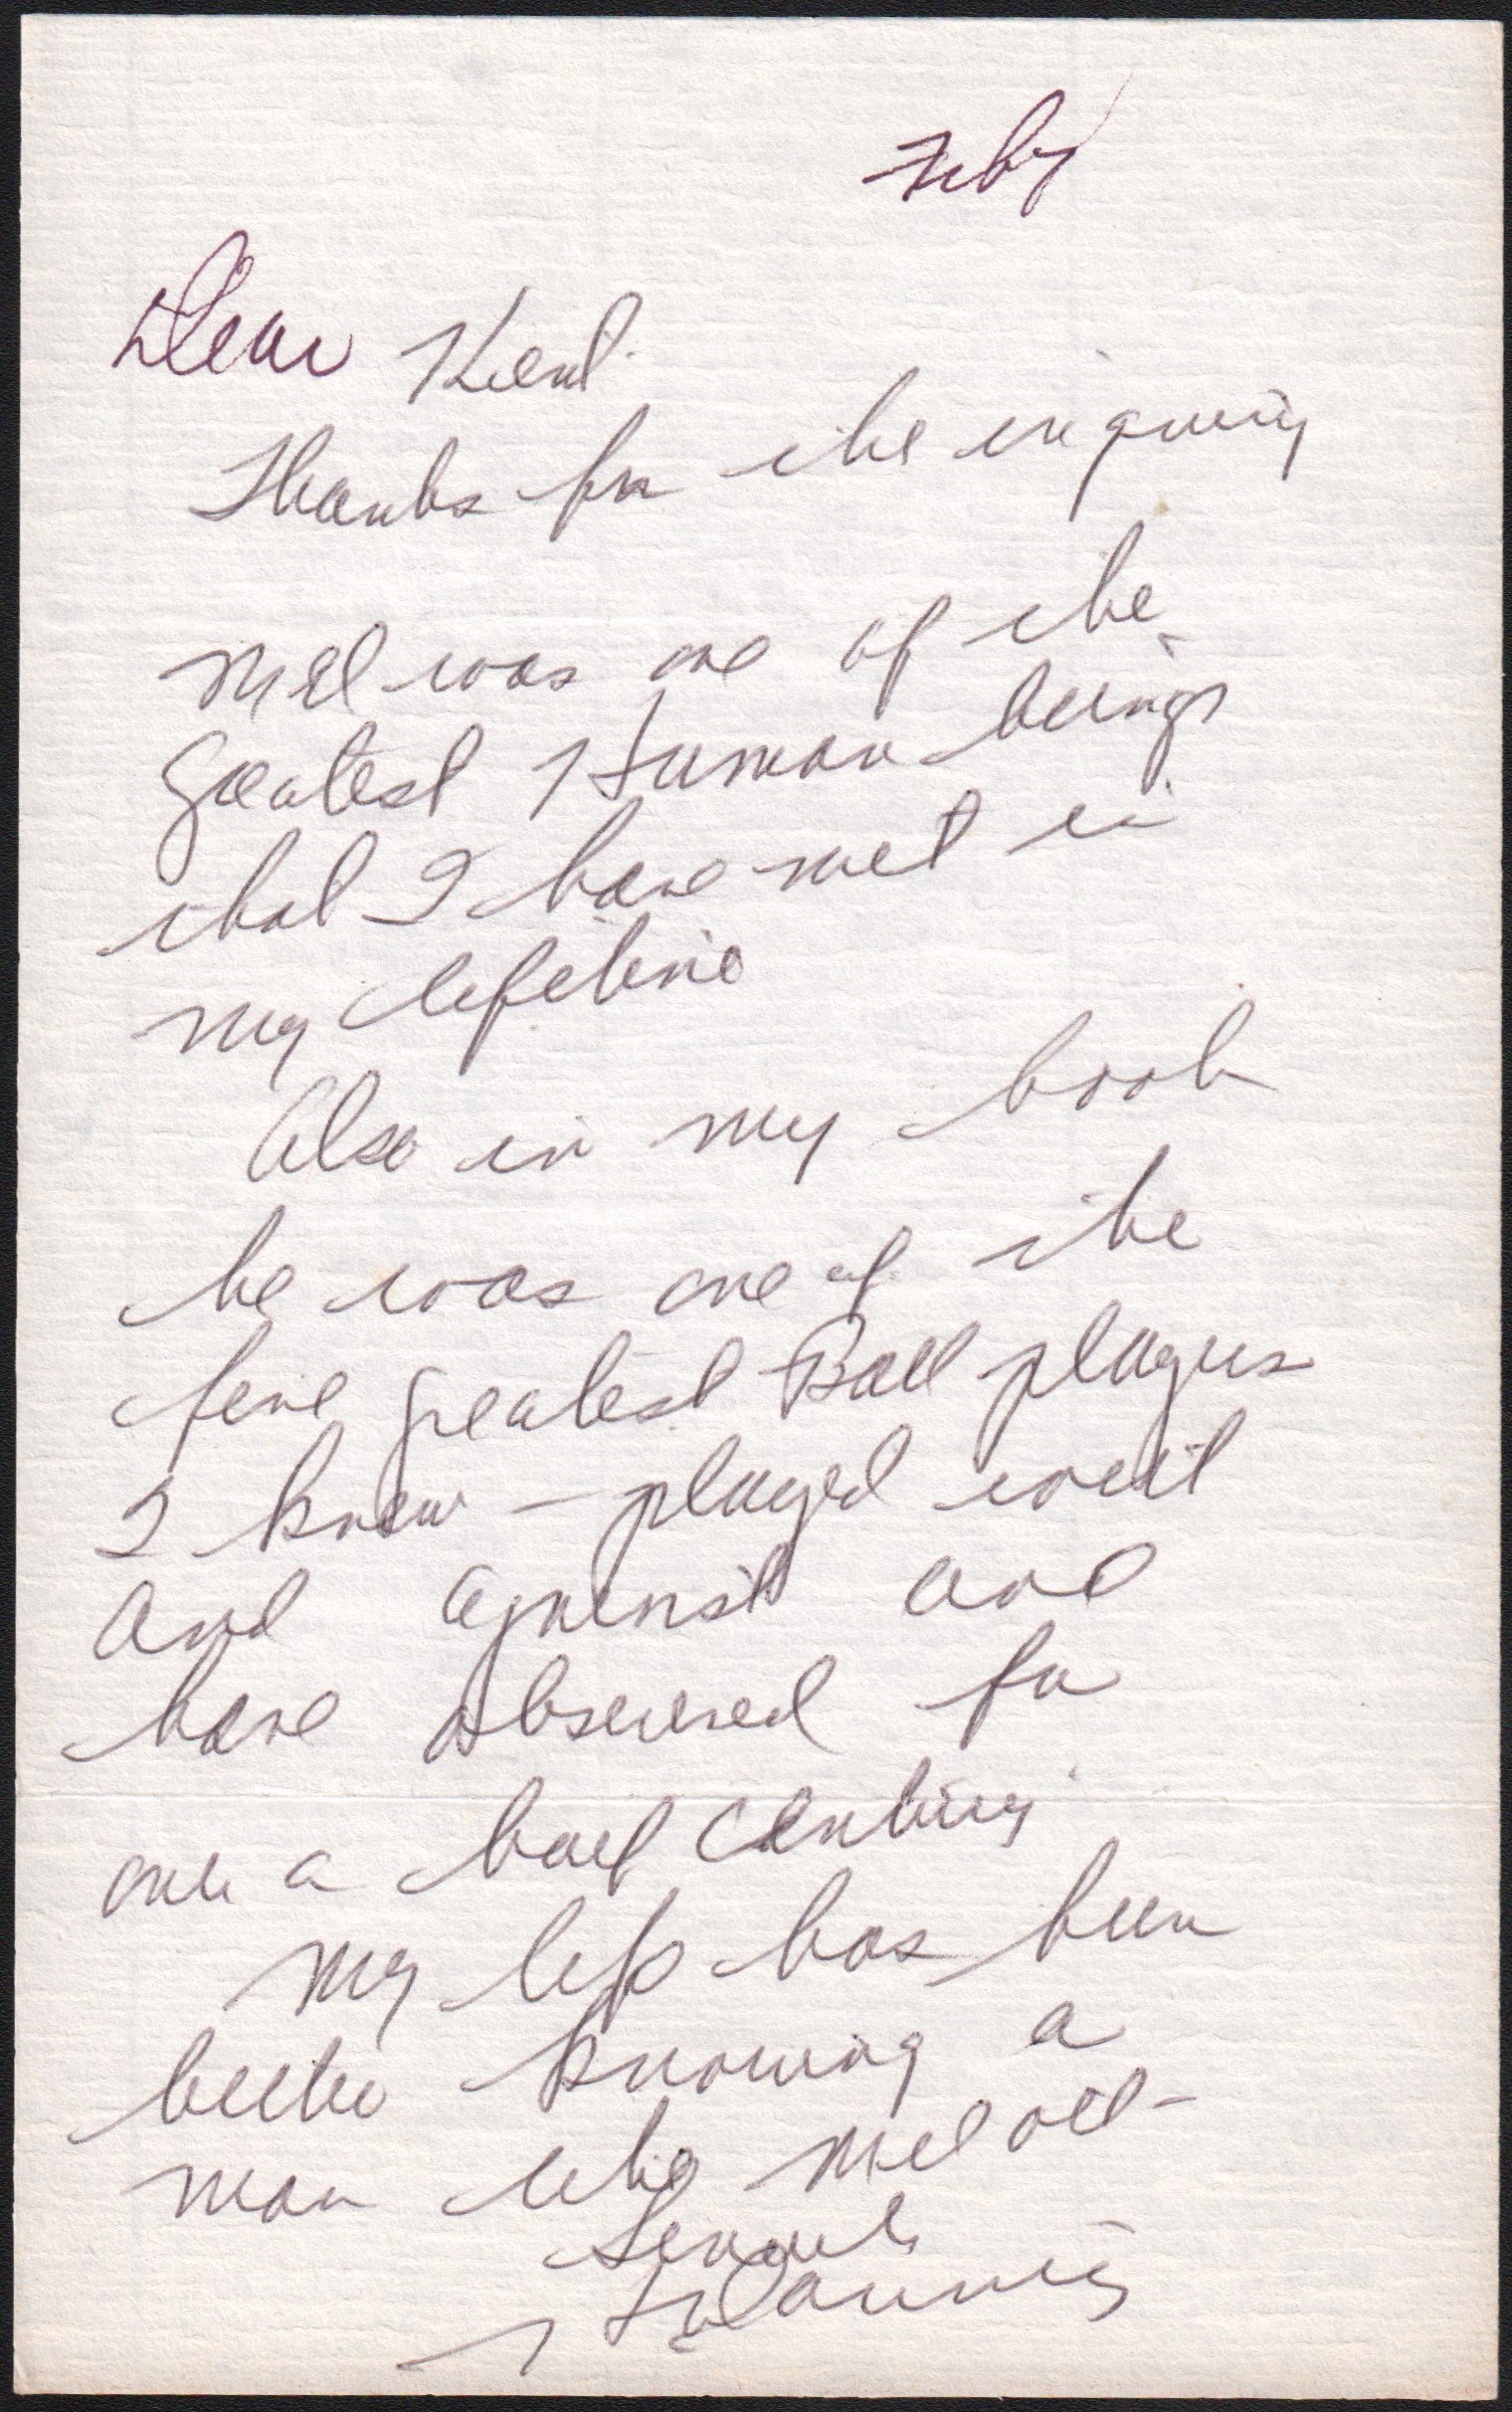 Harry Danning Hand Written Letter w/ Mel Ott "Grestest Human Being" Content